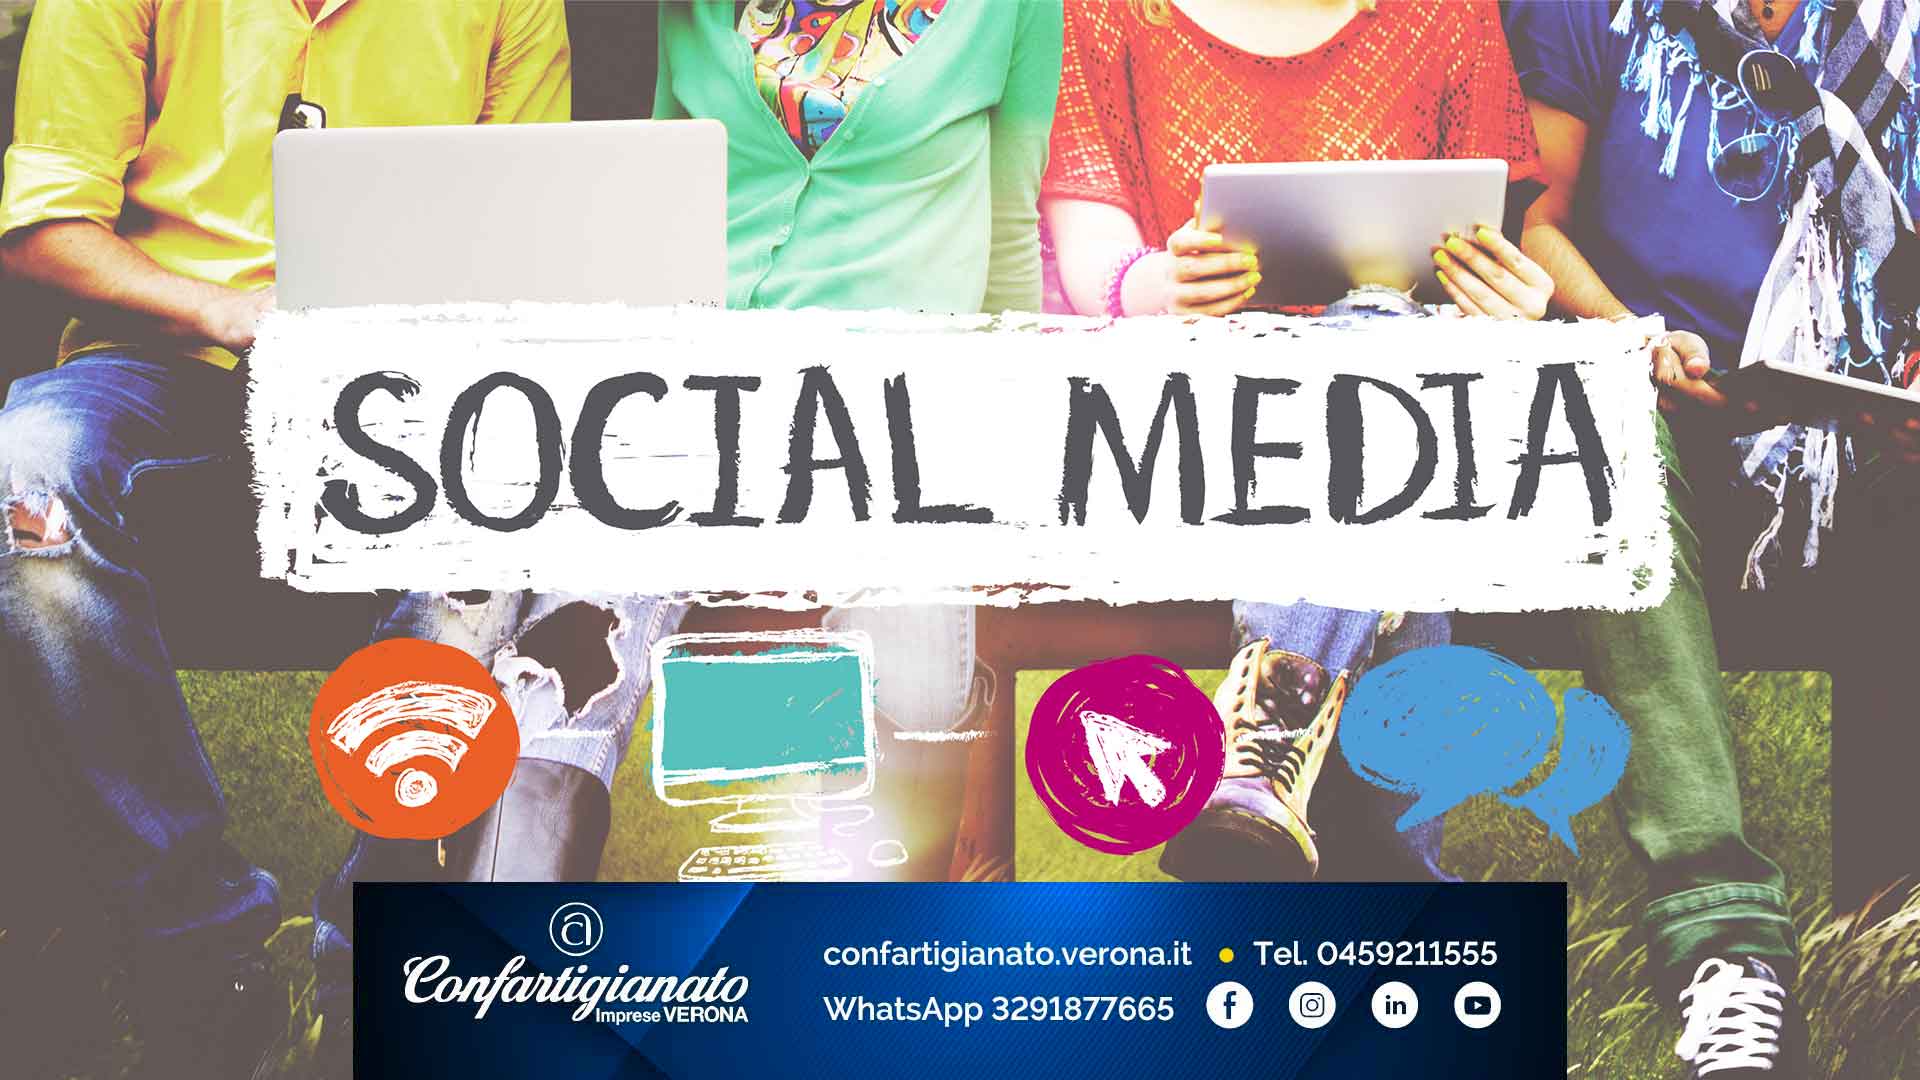 Social Media (corso avanzato): approfondiamo le conoscenze dei canali social per un utilizzo professionale attraverso un percorso di pratica